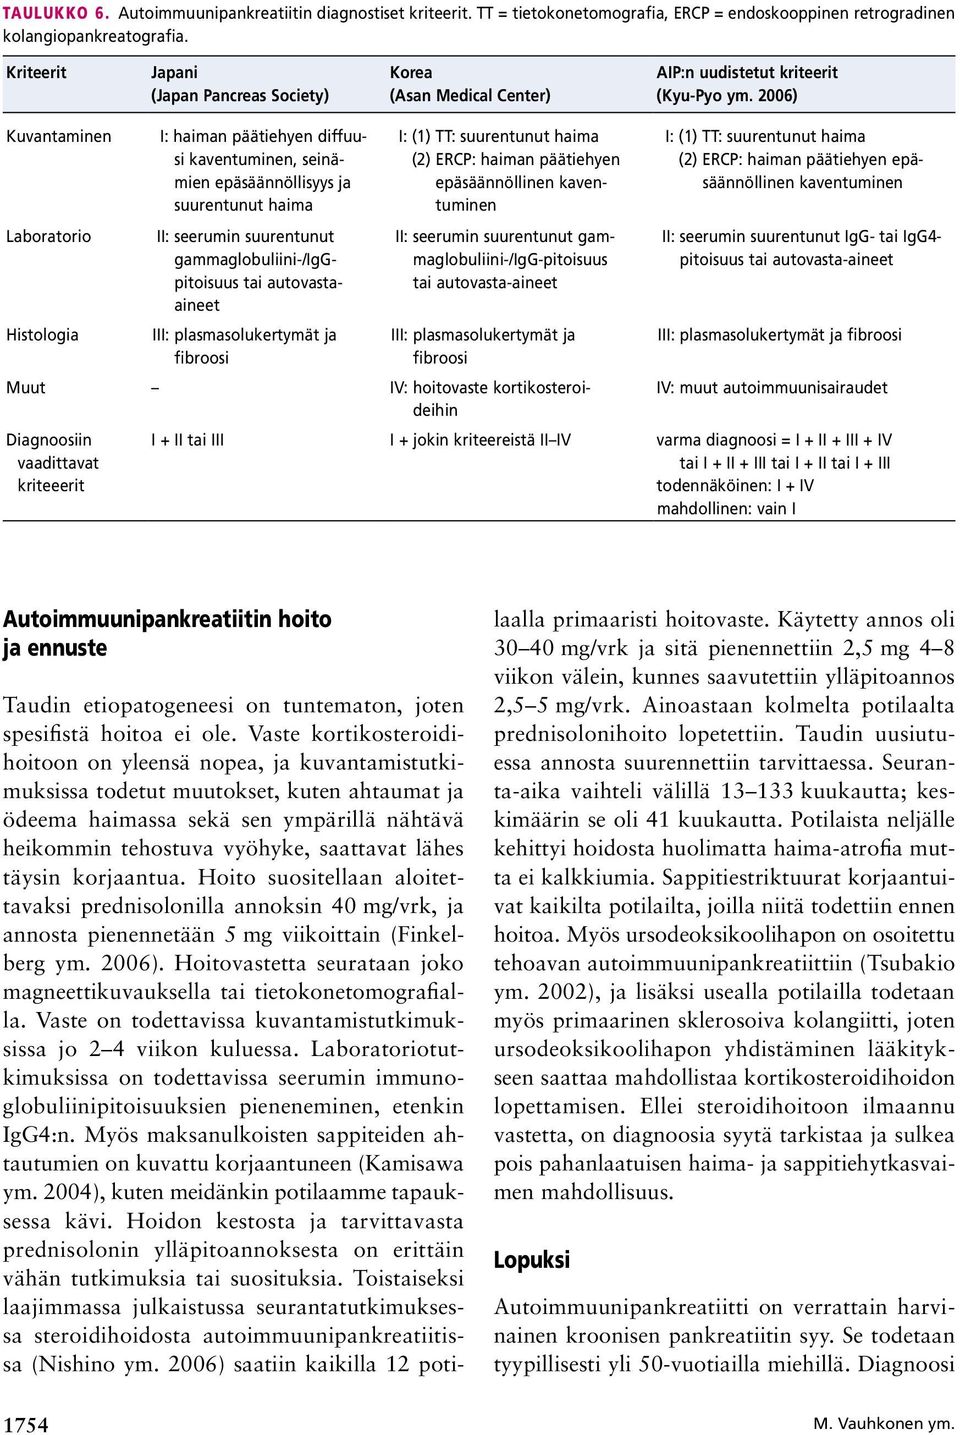 2006) Kuvantaminen I: haiman päätiehyen diffuusi kaventuminen, seinämien epäsäännöllisyys ja suurentunut haima Laboratorio II: seerumin suurentunut gammaglobuliini-/iggpitoisuus tai autovastaaineet